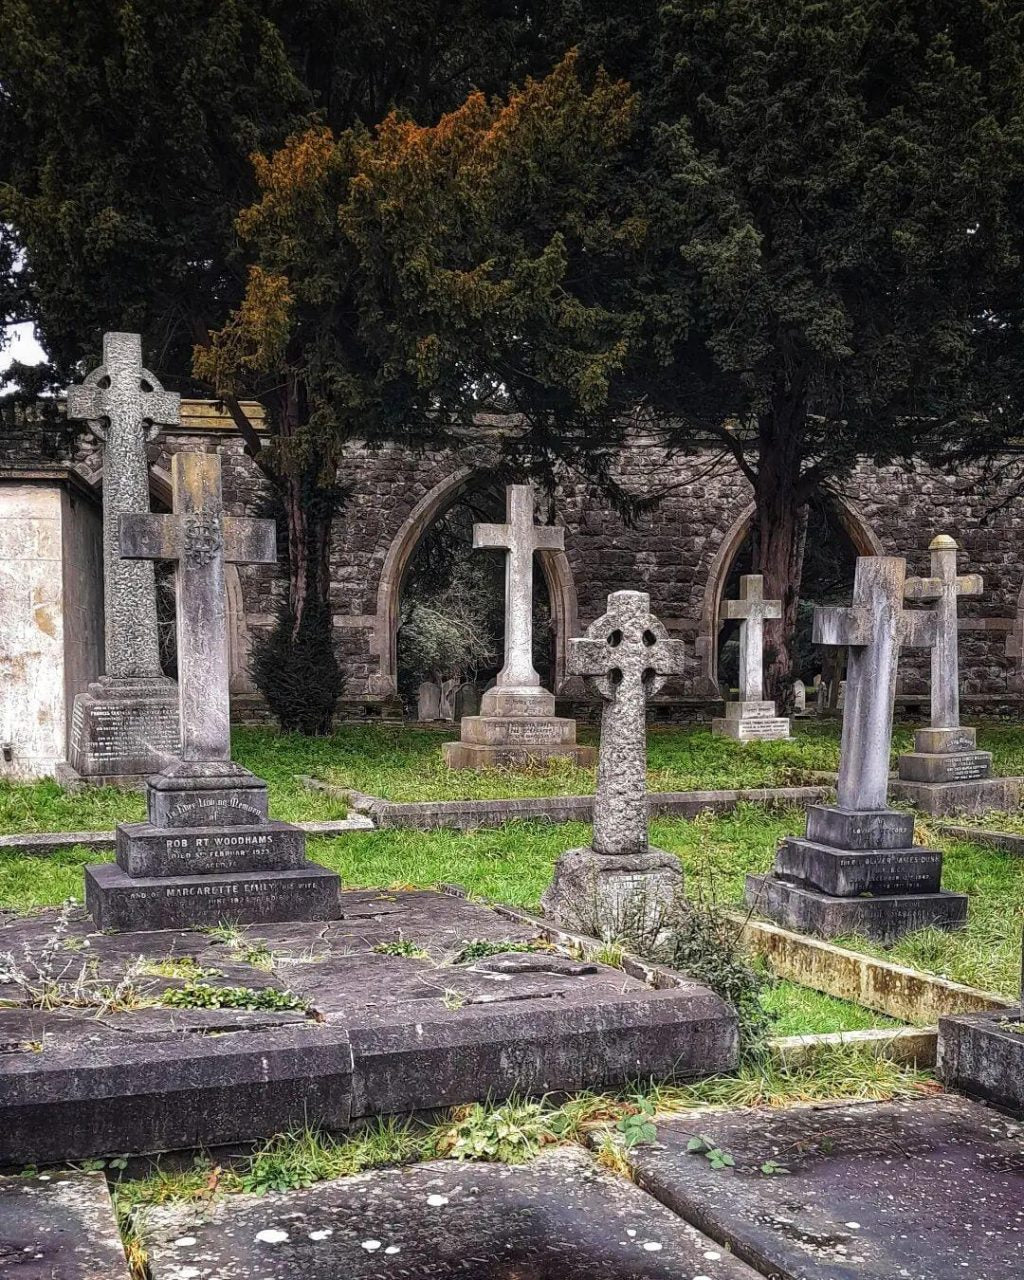 Erster Tipp: Besuchen Sie gemeinsam einen örtlichen Friedhof